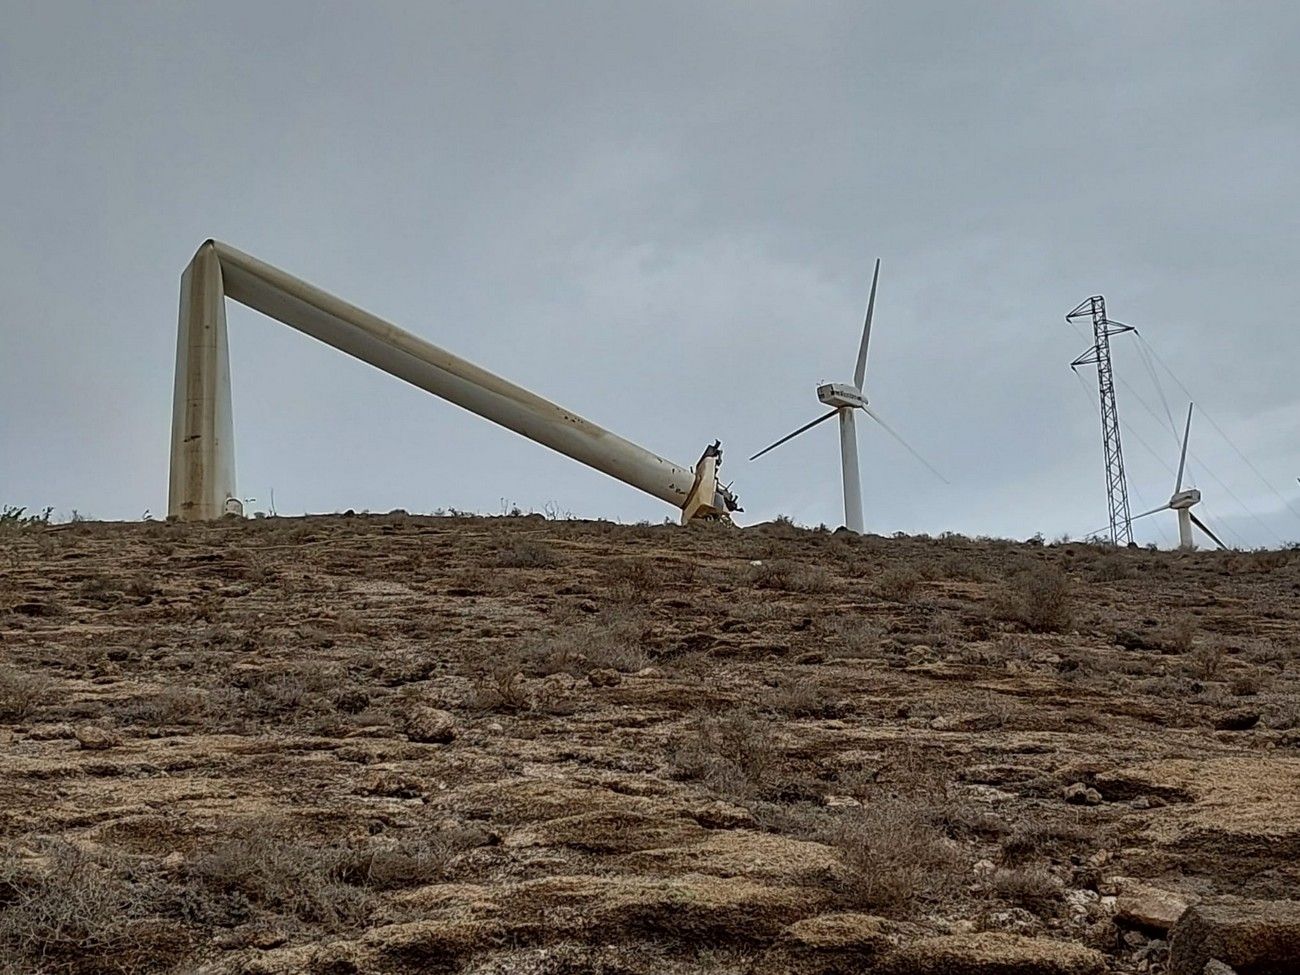 Cae por el viento un aerogenerador en desuso en Lanzarote y deja sin luz a varios núcleos